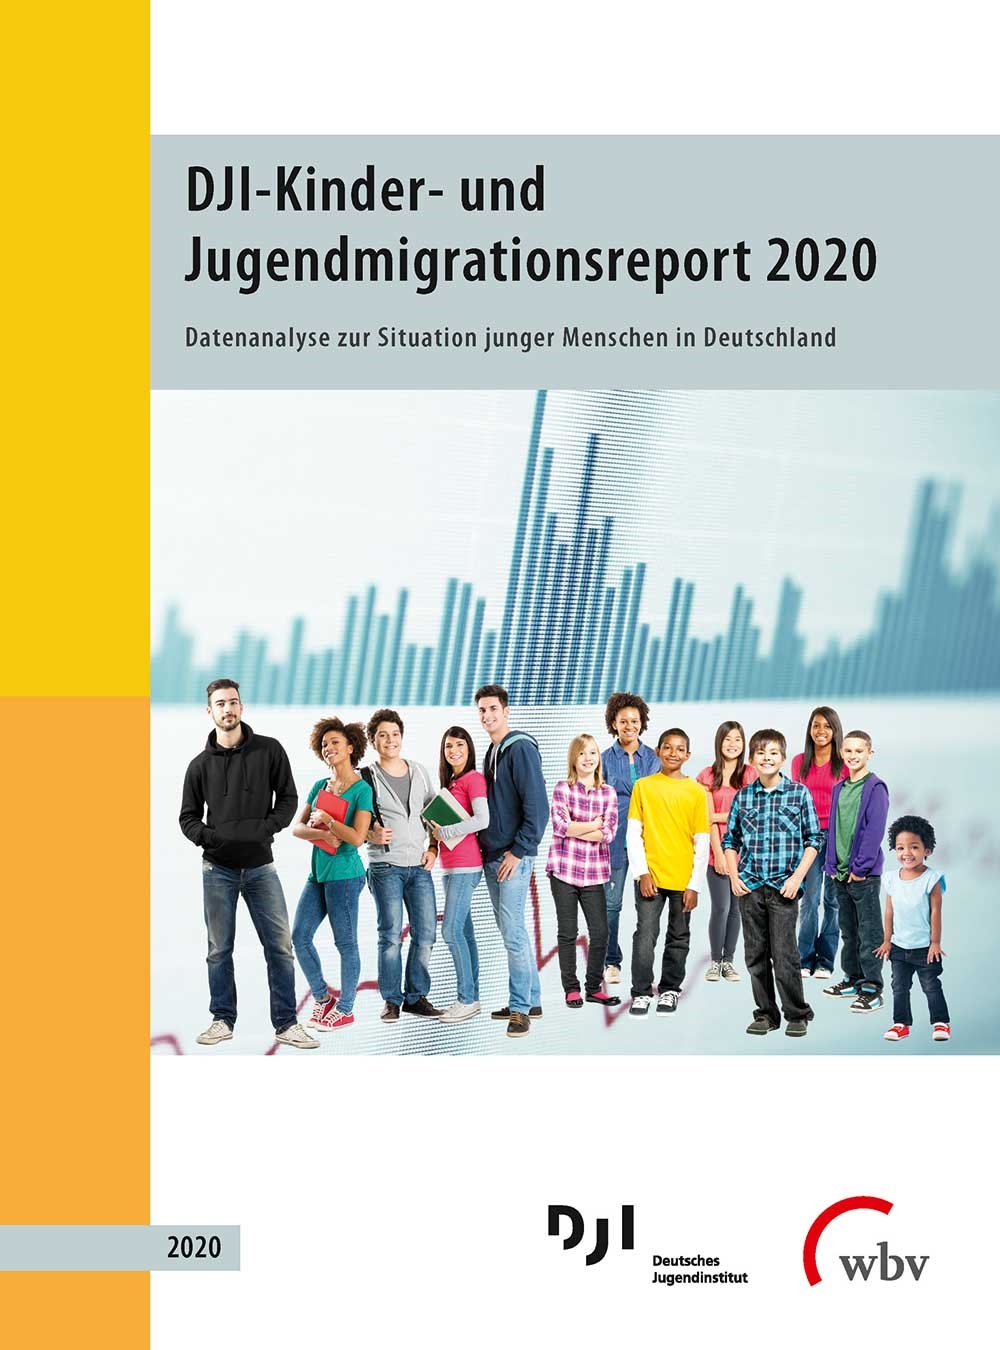 DJI-Kinder- und Jugendmigrationsreport 2020